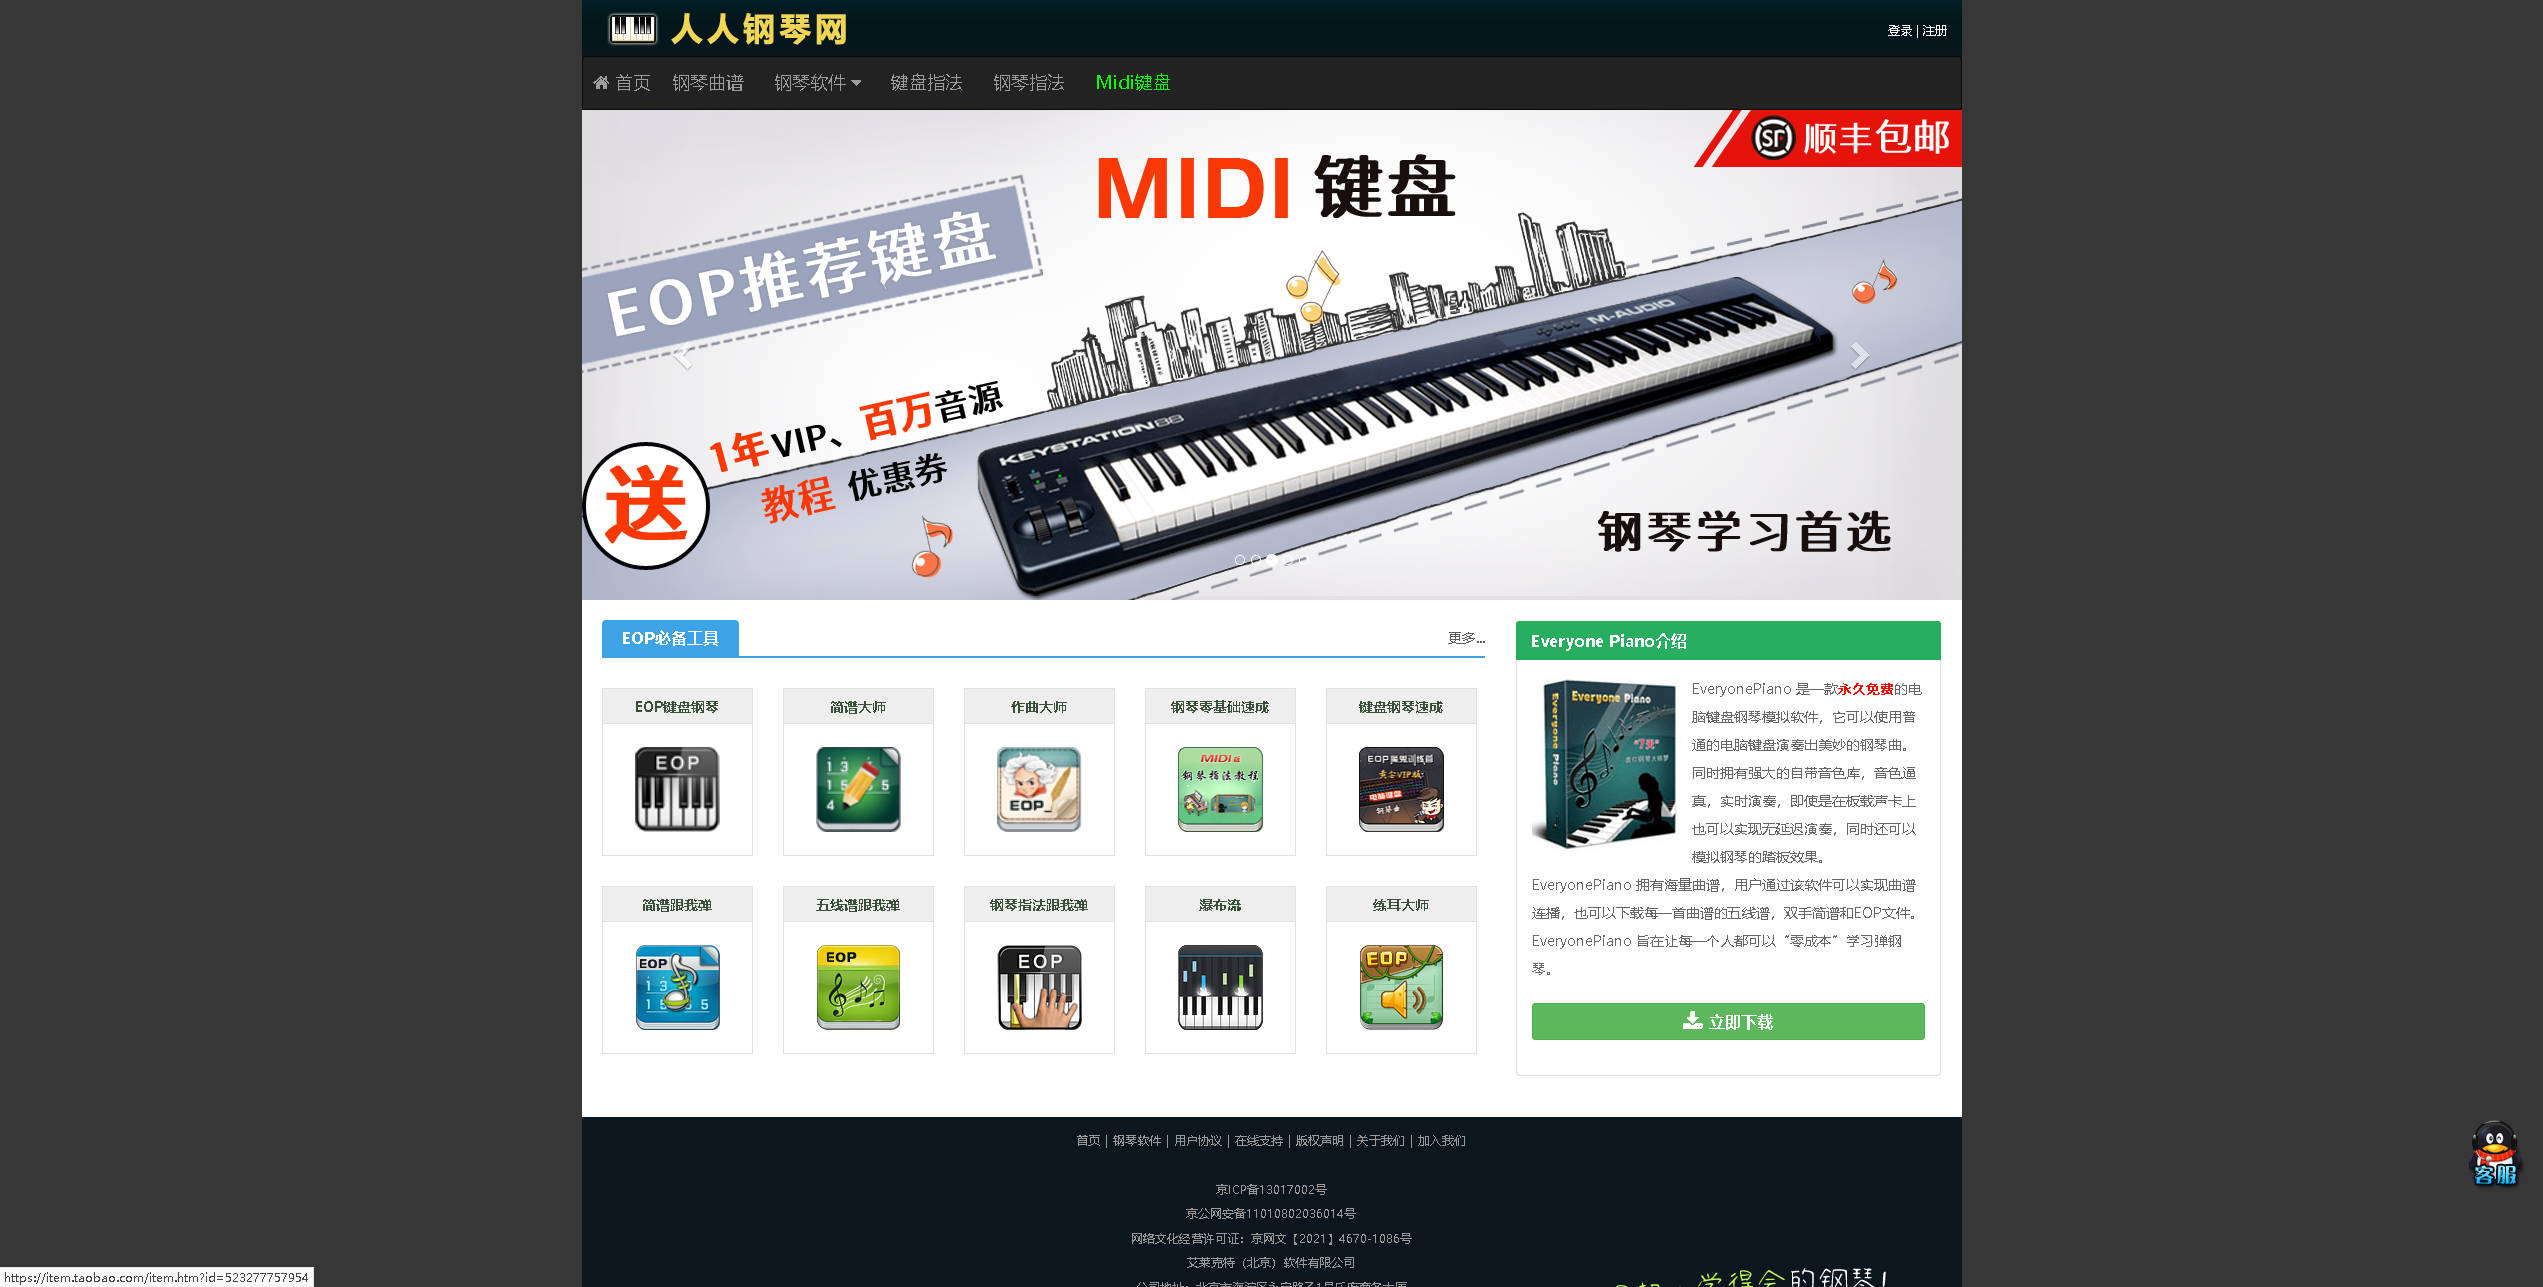 【网站】Everyone Piano人人钢琴网 – 永久免费的钢琴学习软件